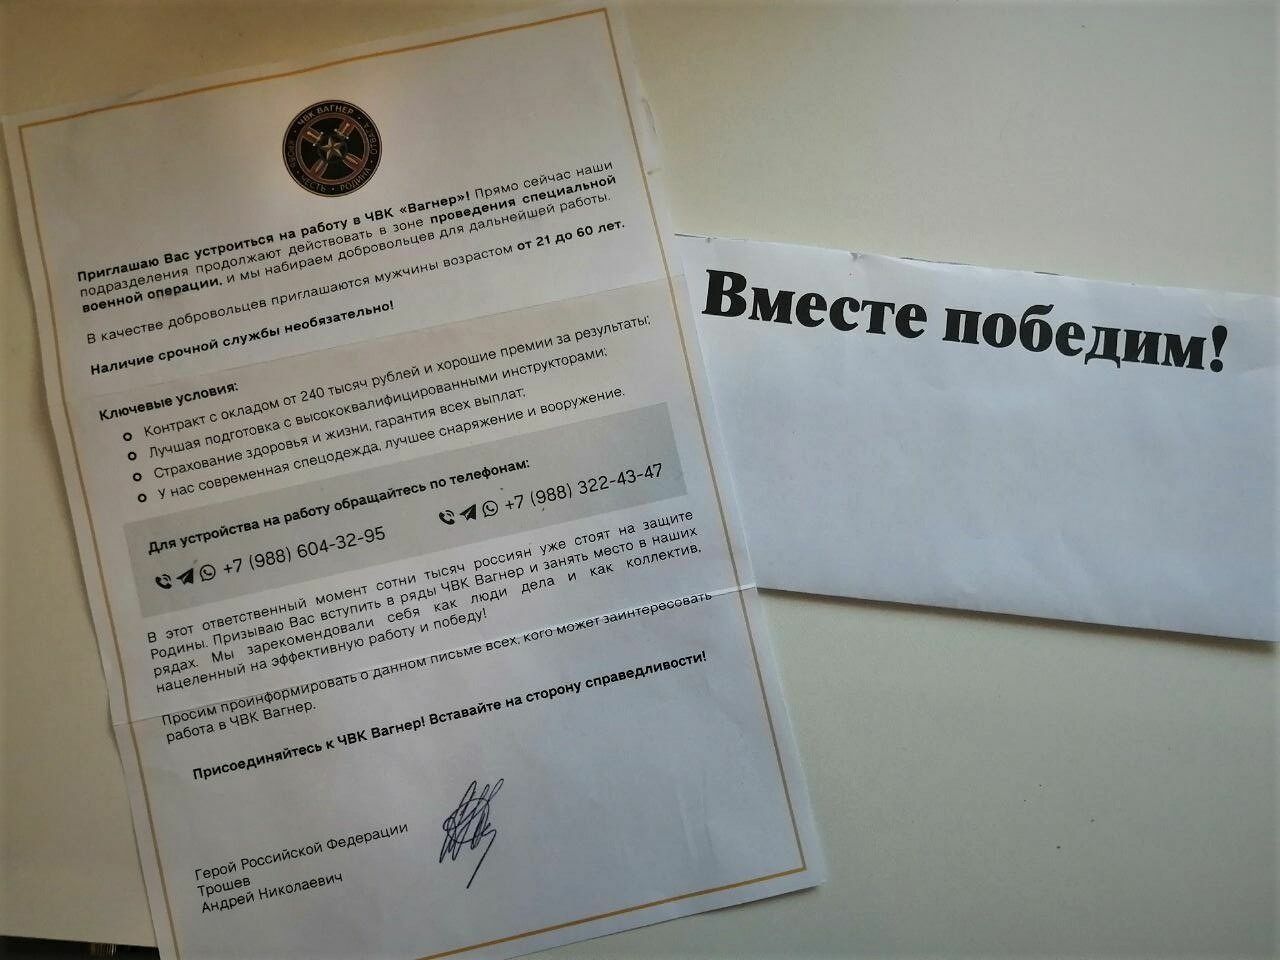 Бойцам обещают оклад от 240 тысяч рублей.